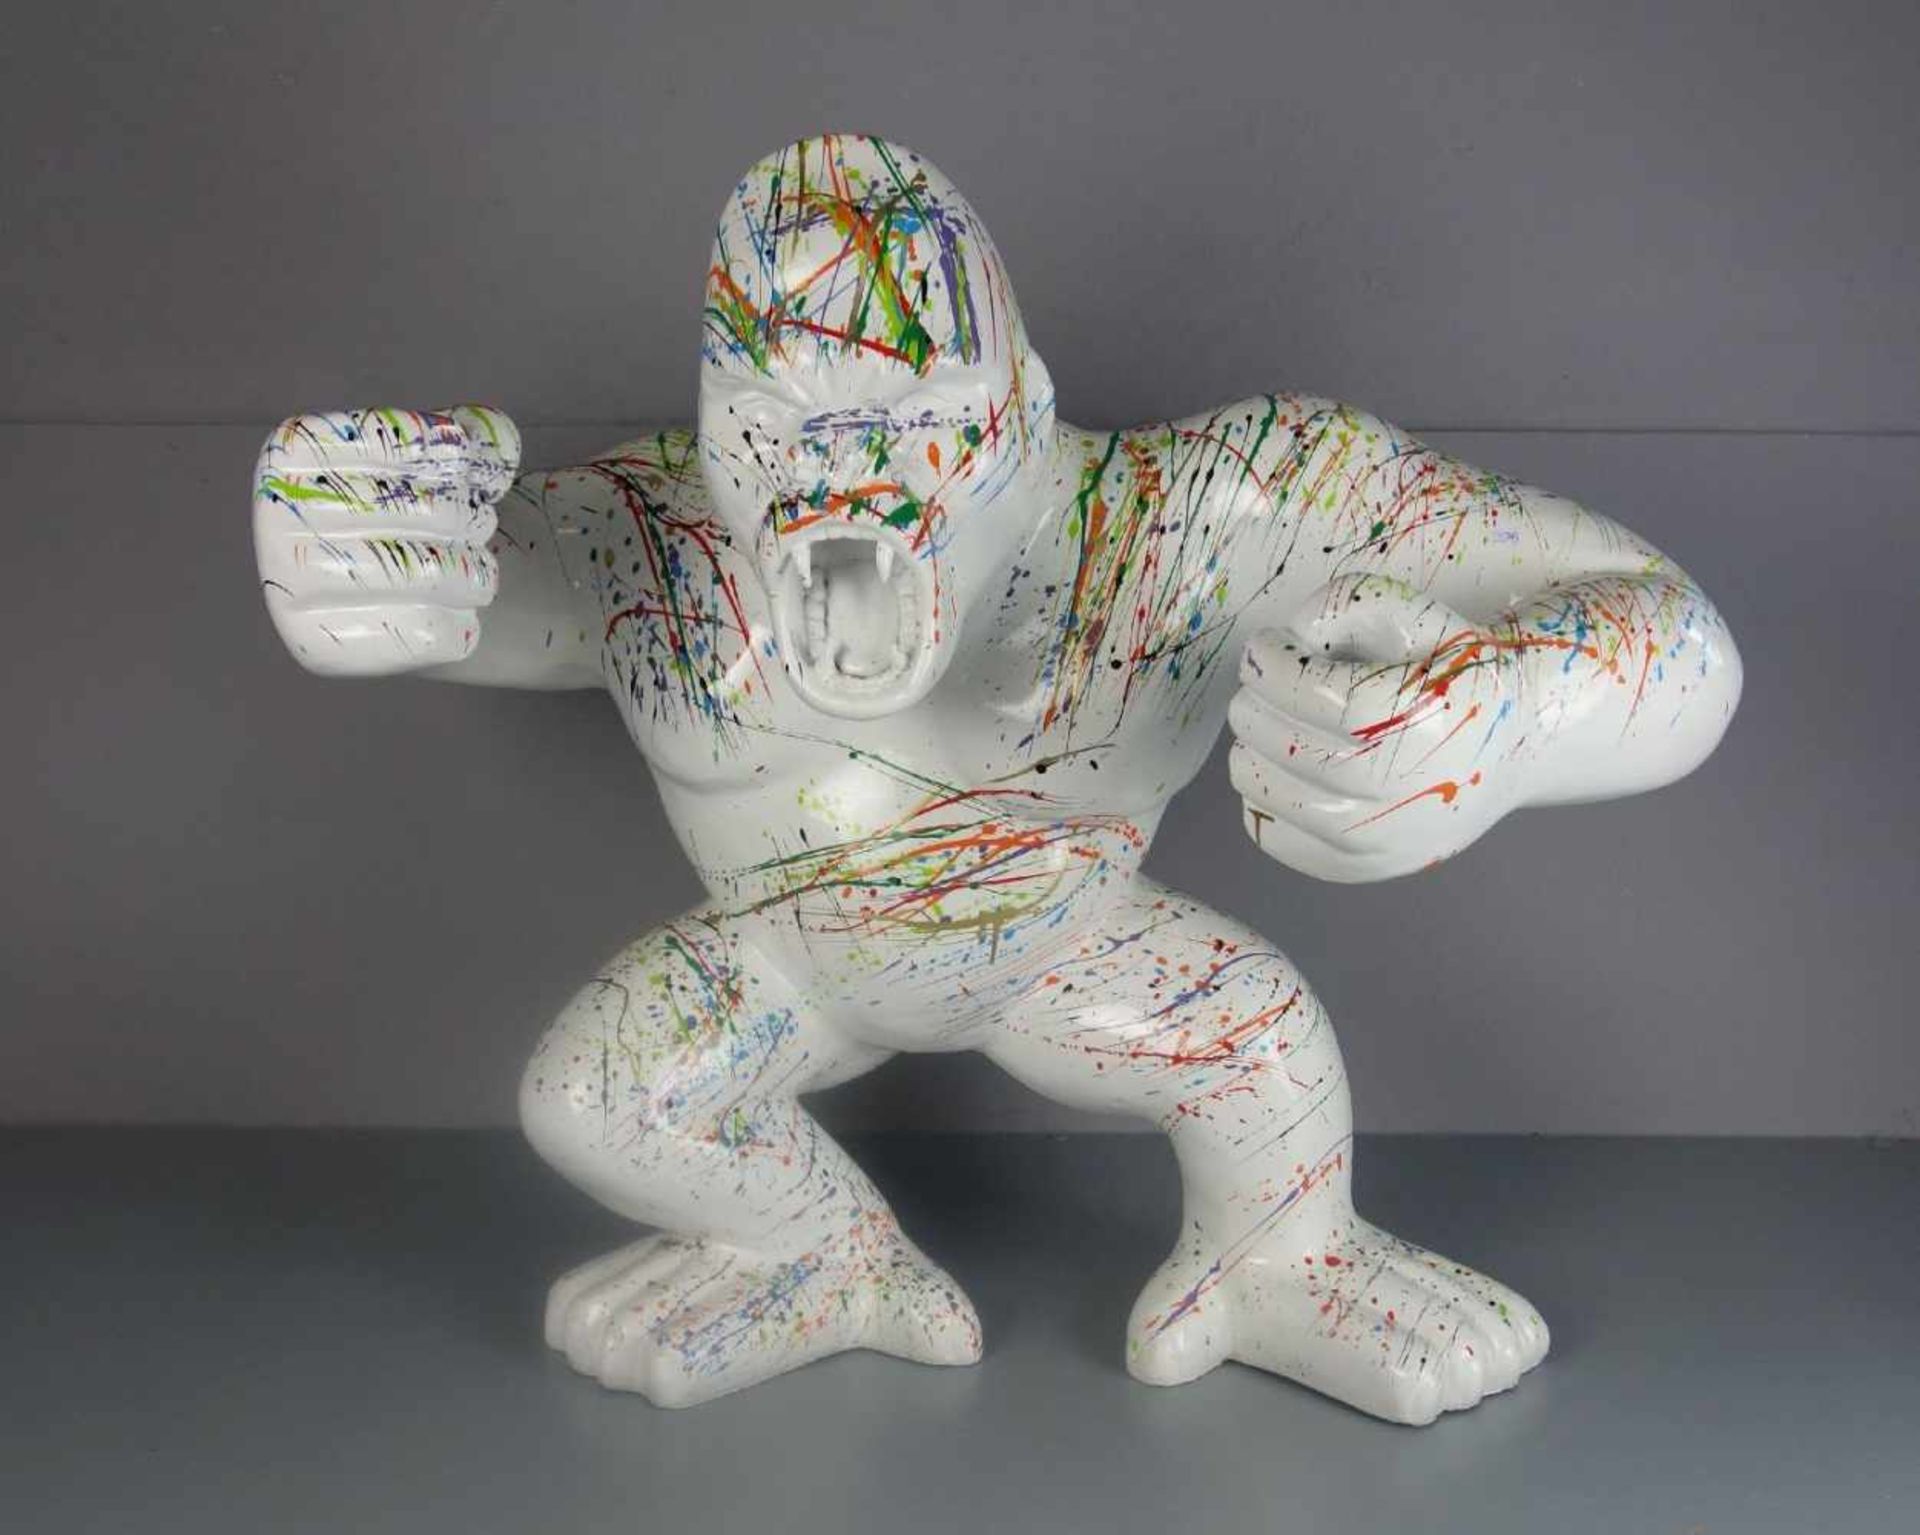 SKULPTUR: "Gorilla", Masse mit weißem Fond und farbiger Lackdekoration in Art des "Action painting".